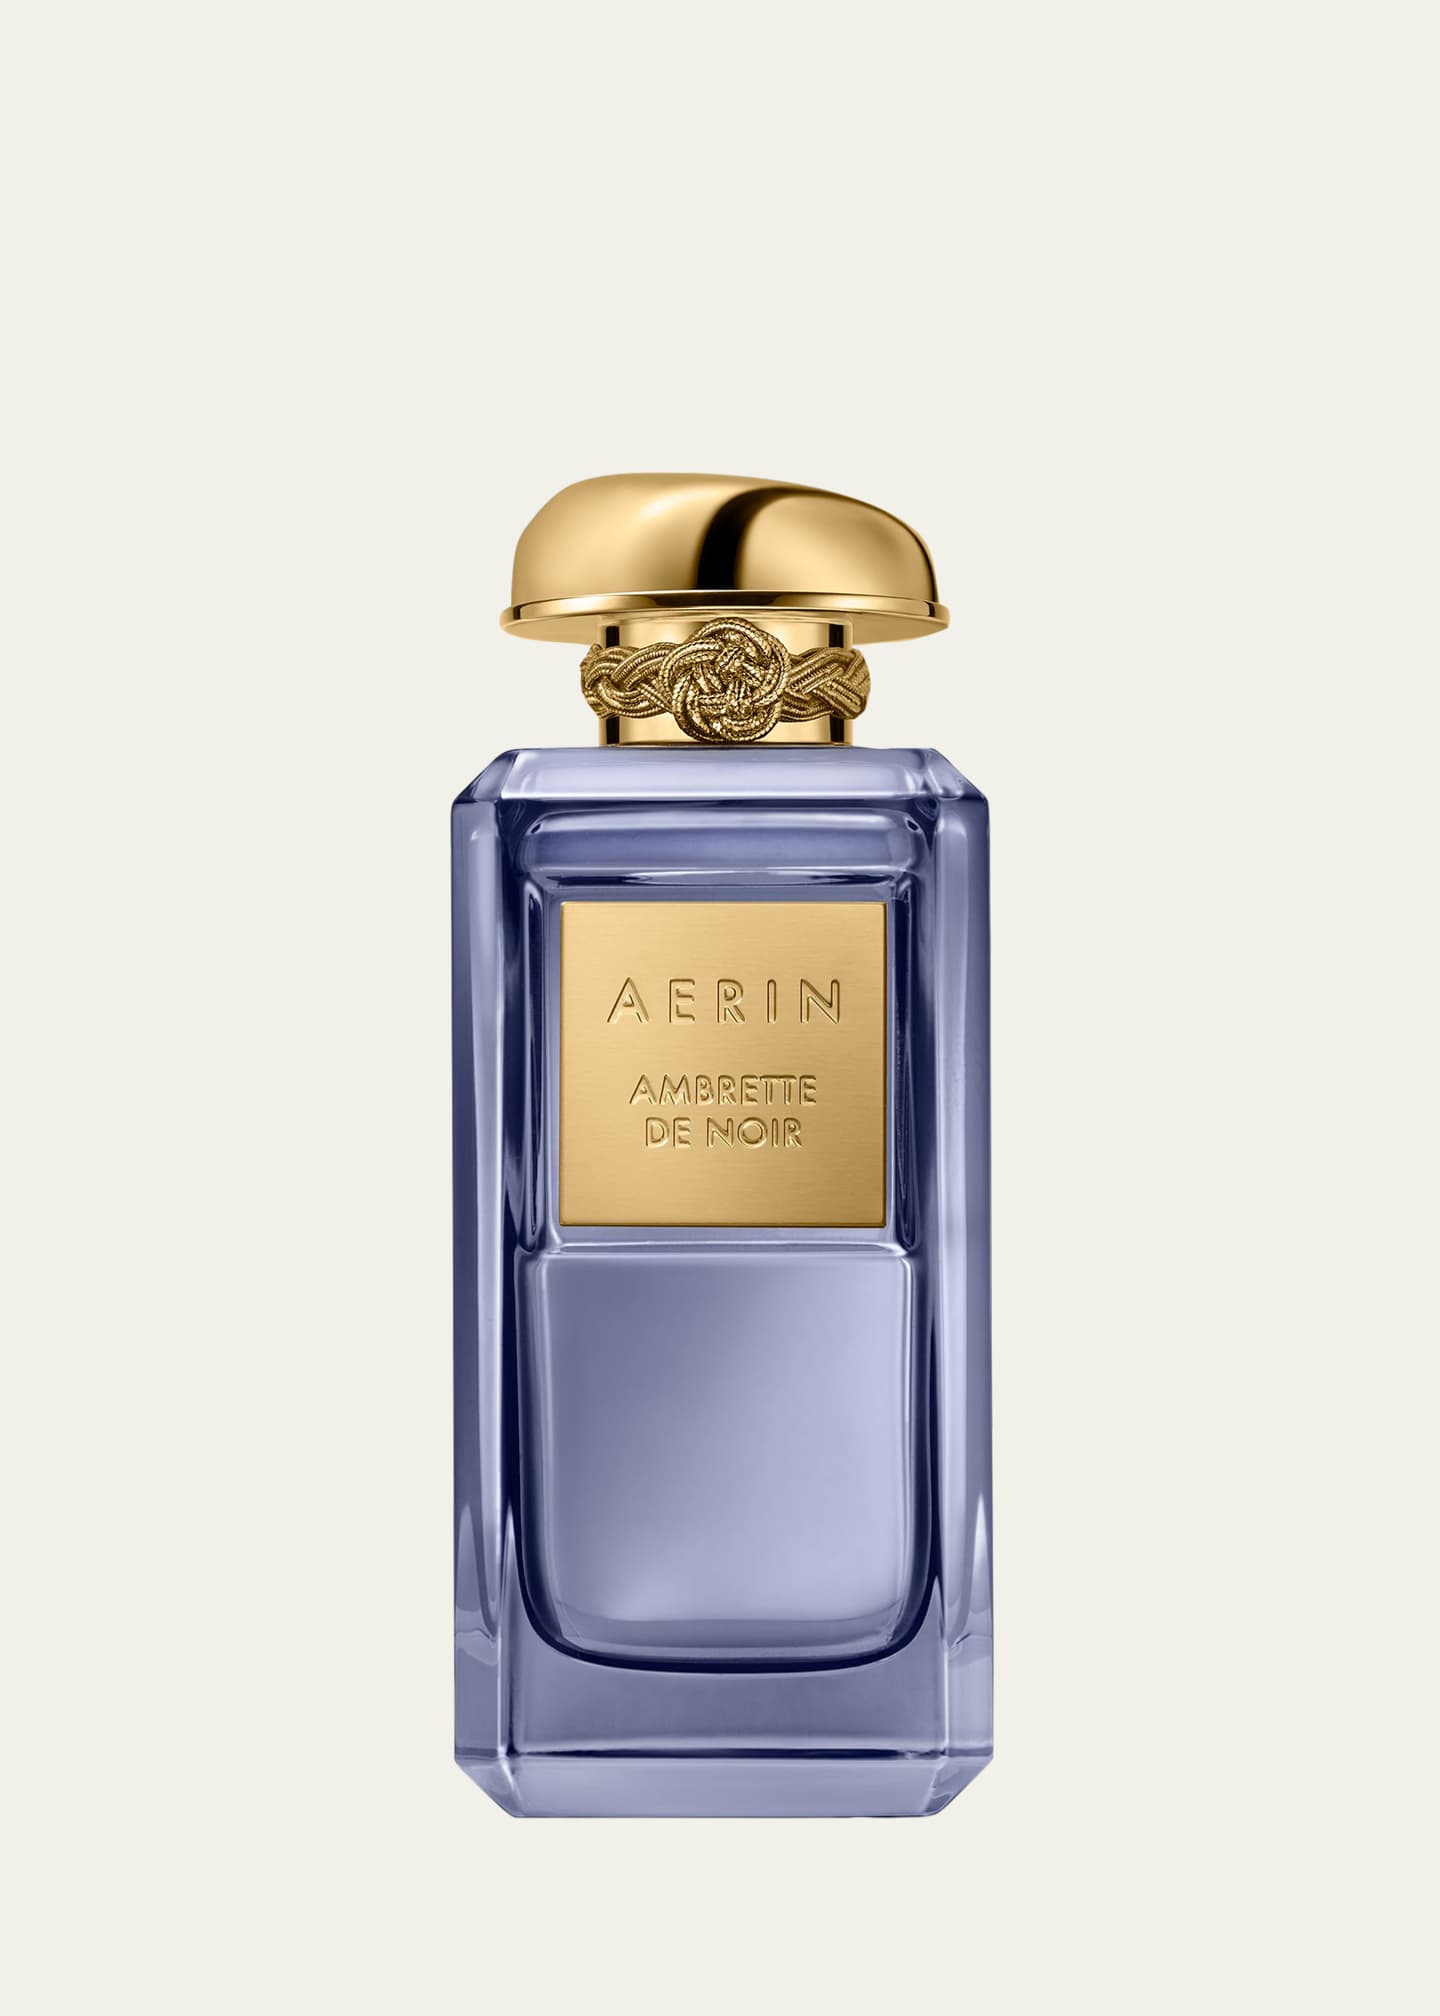 AERIN AERIN Ambrette de Noir Parfum, 3.4 oz.